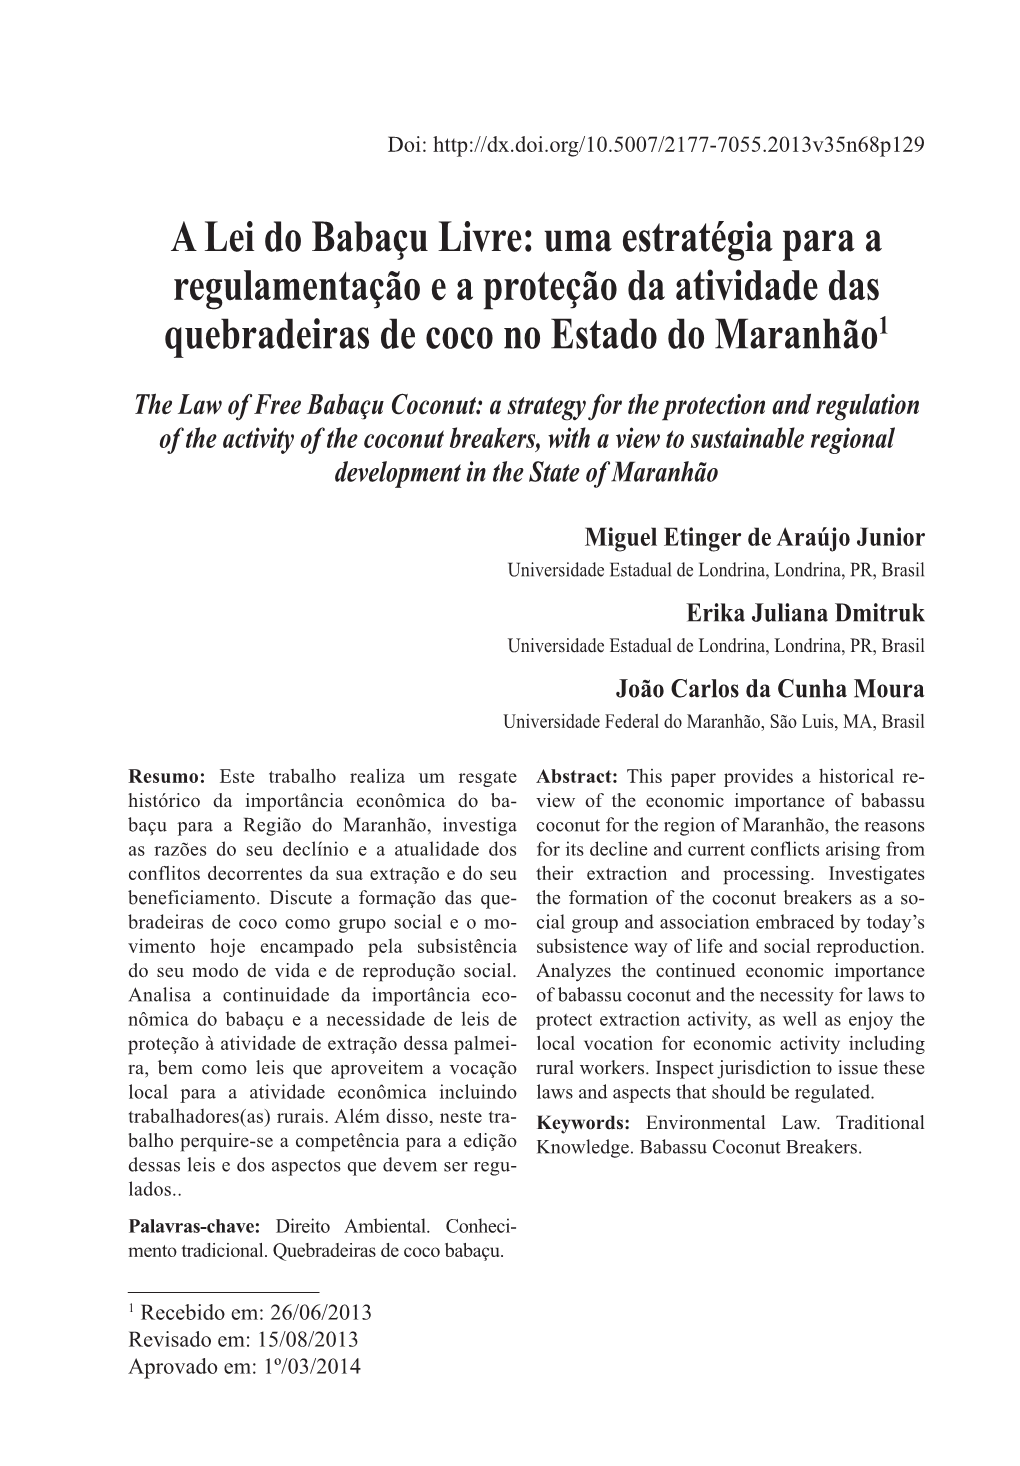 A Lei Do Babaçu Livre: Uma Estratégia Para a Regulamentação E a Proteção Da Atividade Das Quebradeiras De Coco No Estado Do Maranhão1